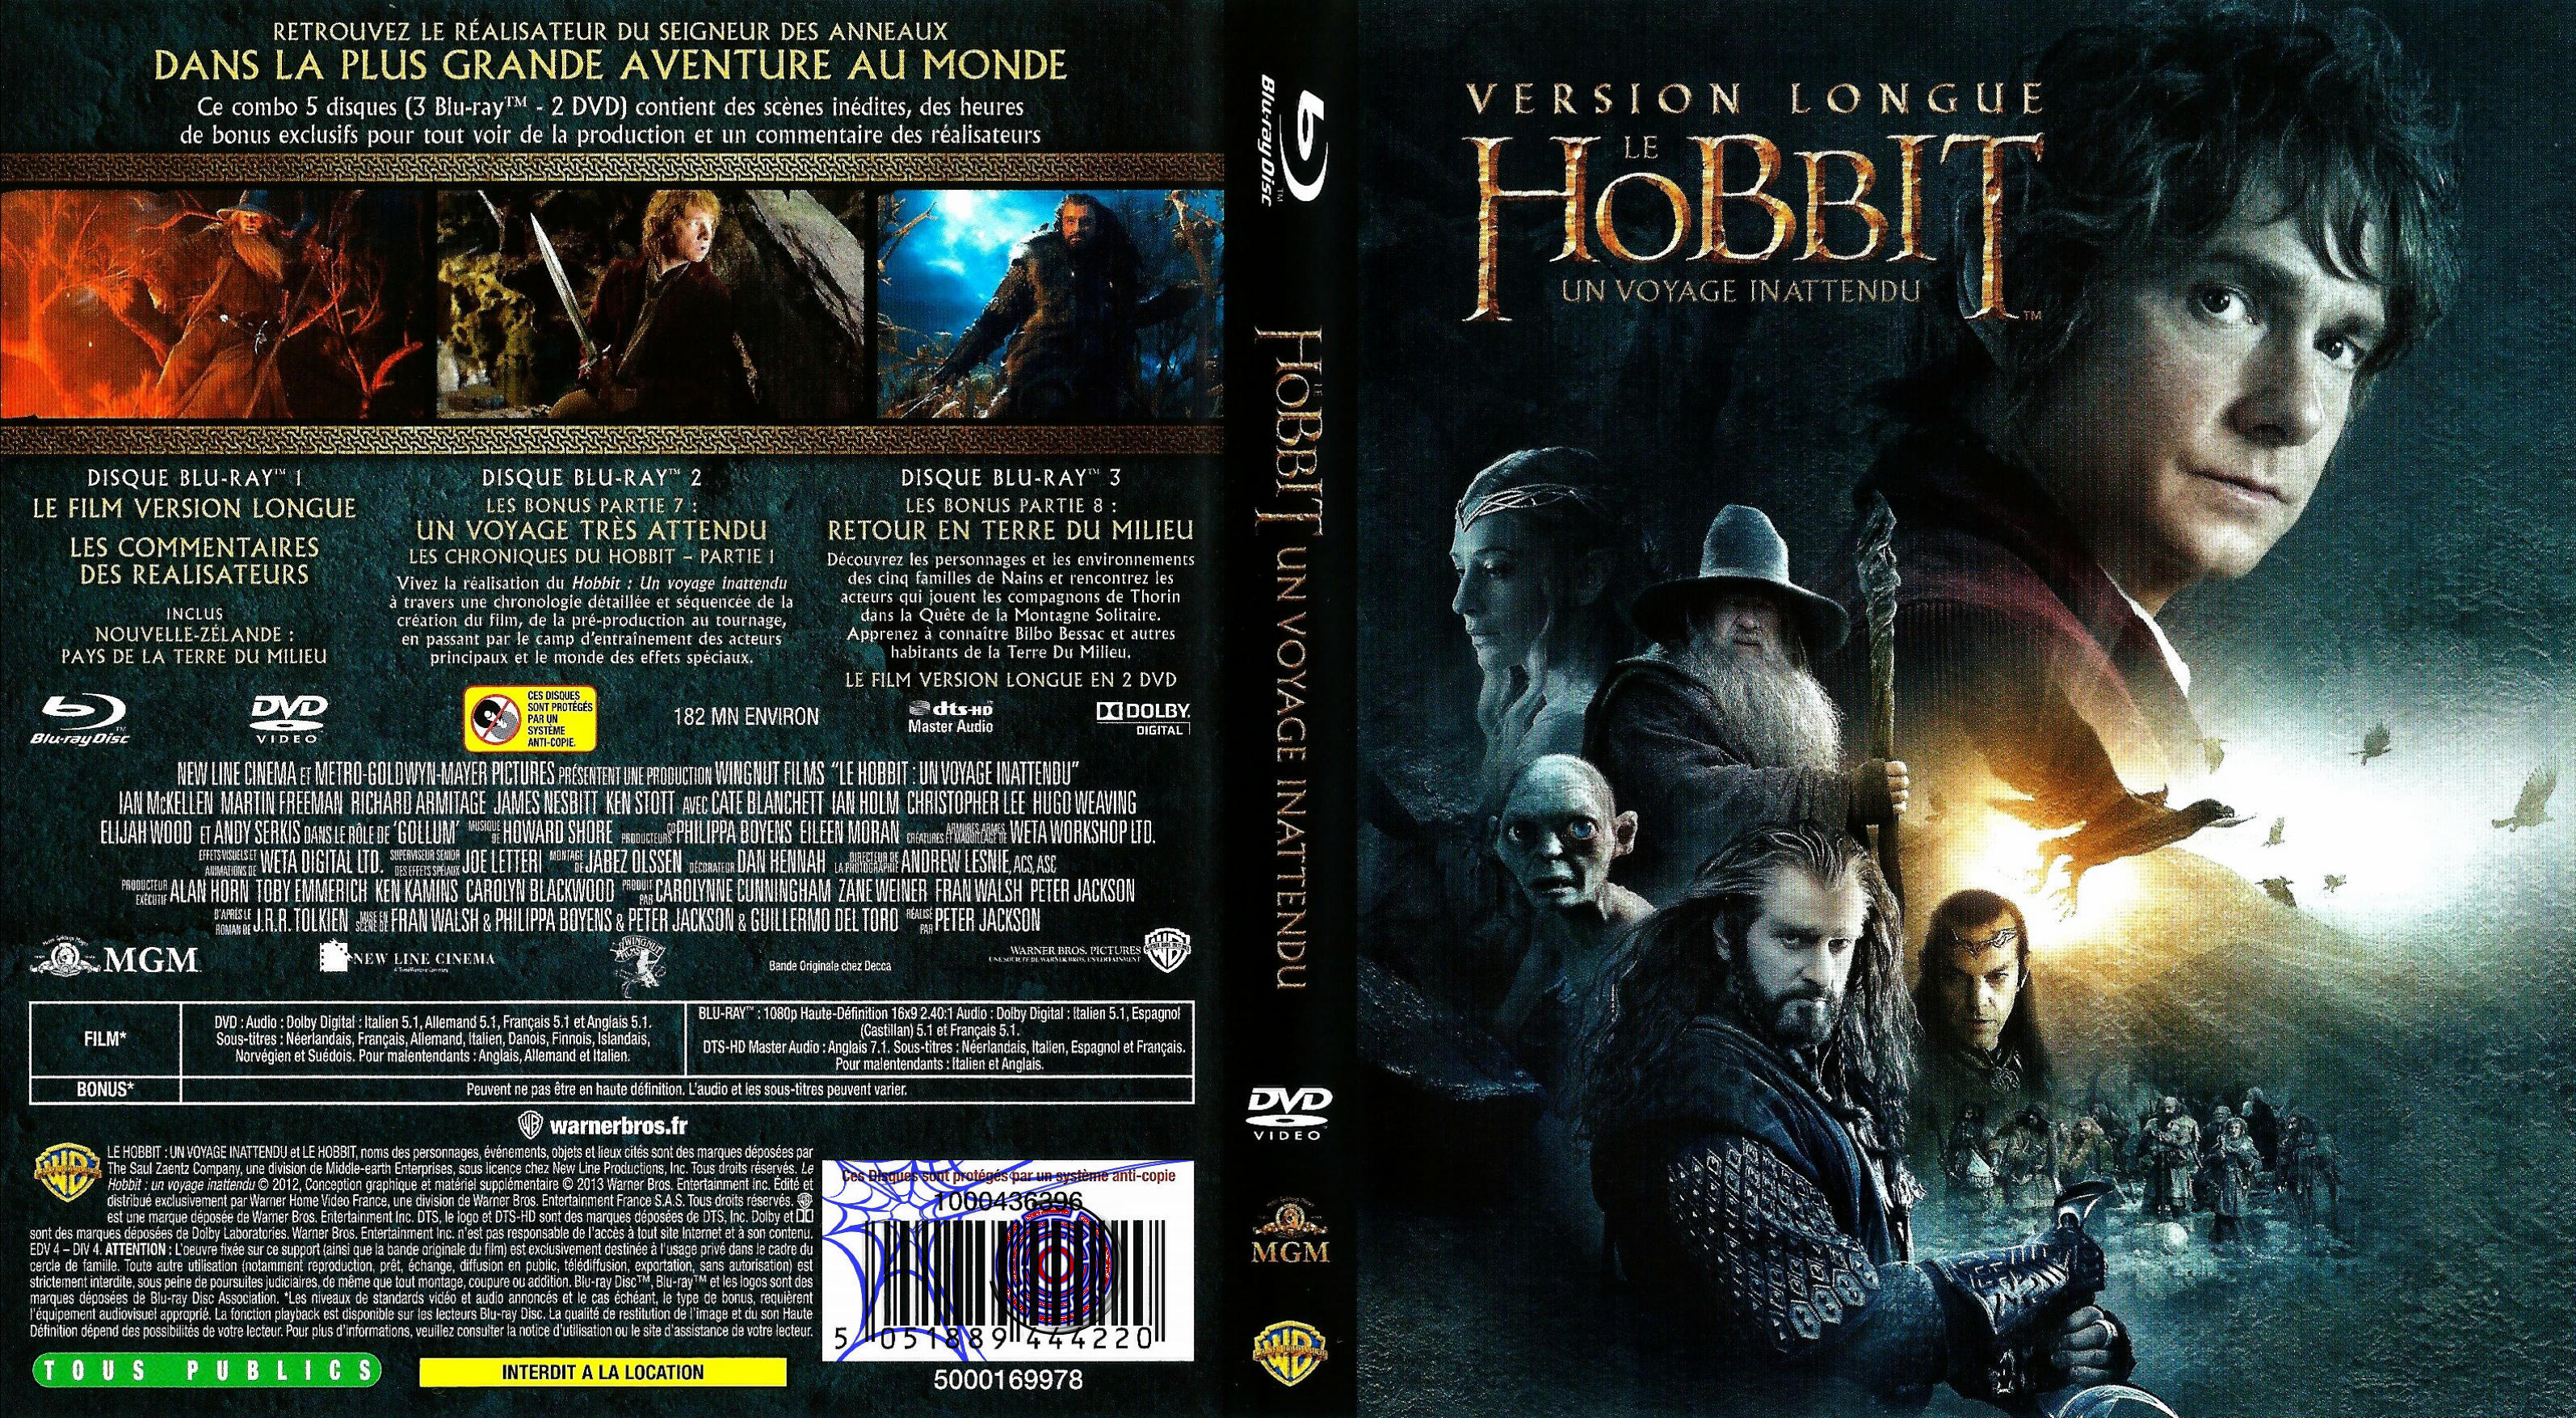 Jaquette DVD Le Hobbit un voyage inattendu (BLU-RAY) v5